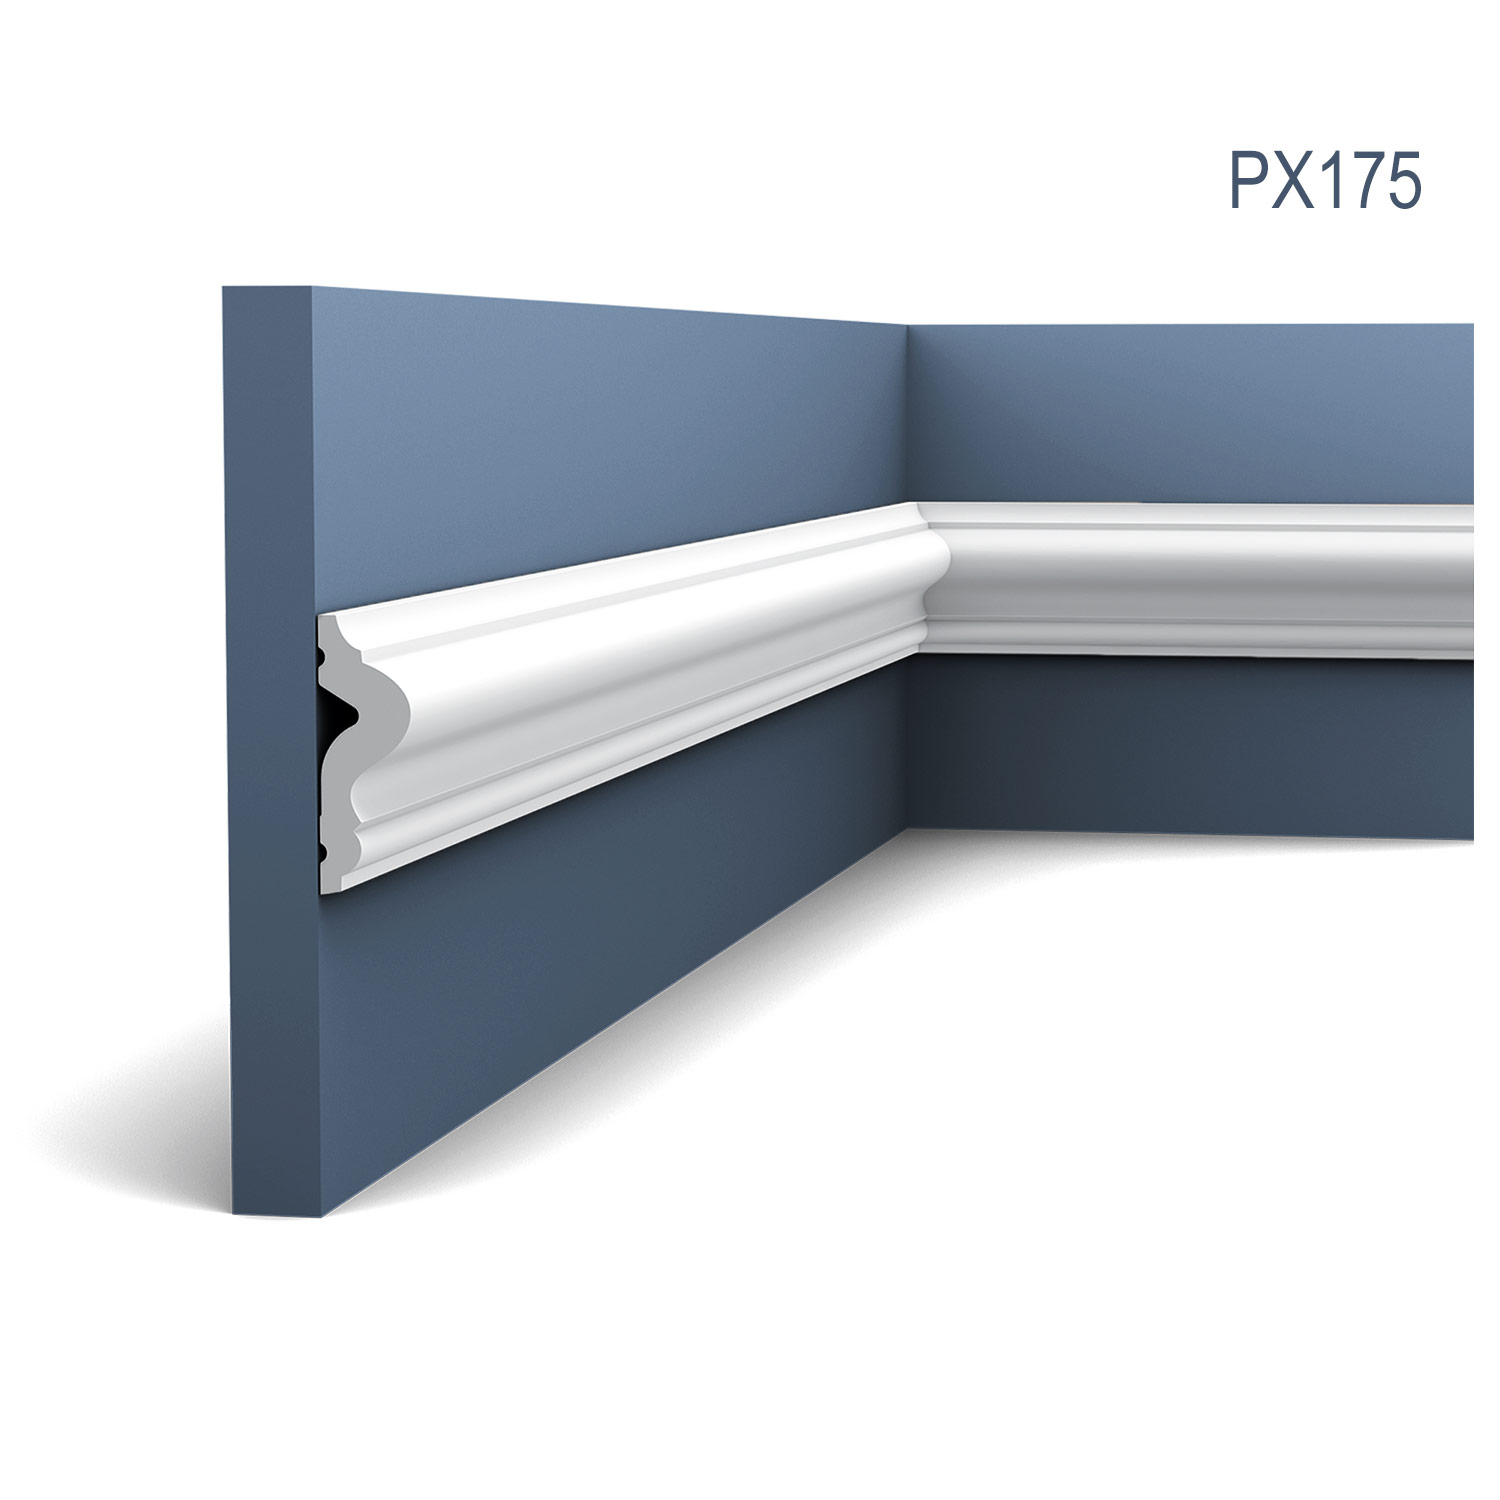 Brau intermediar PX175, profil decorativ multifunctional, pentru perete, alba, vopsibila, rigida, calitate excelenta, Belgia, din Duropolymer®, L 200 x H 5 x L 1,7 cm